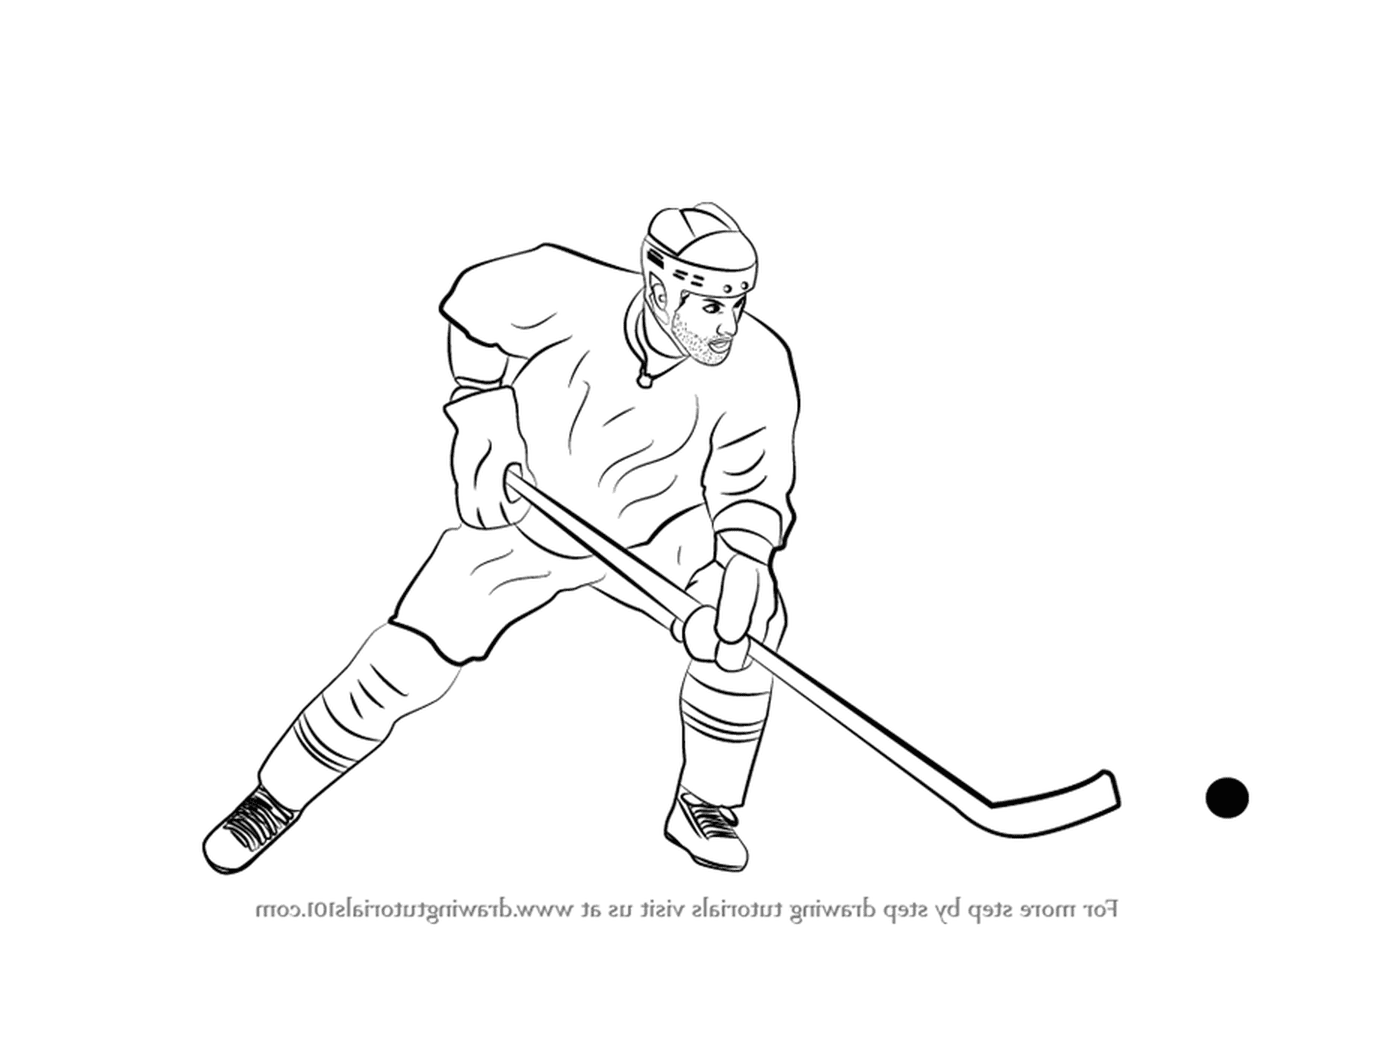  Dibujo de un jugador de hockey 